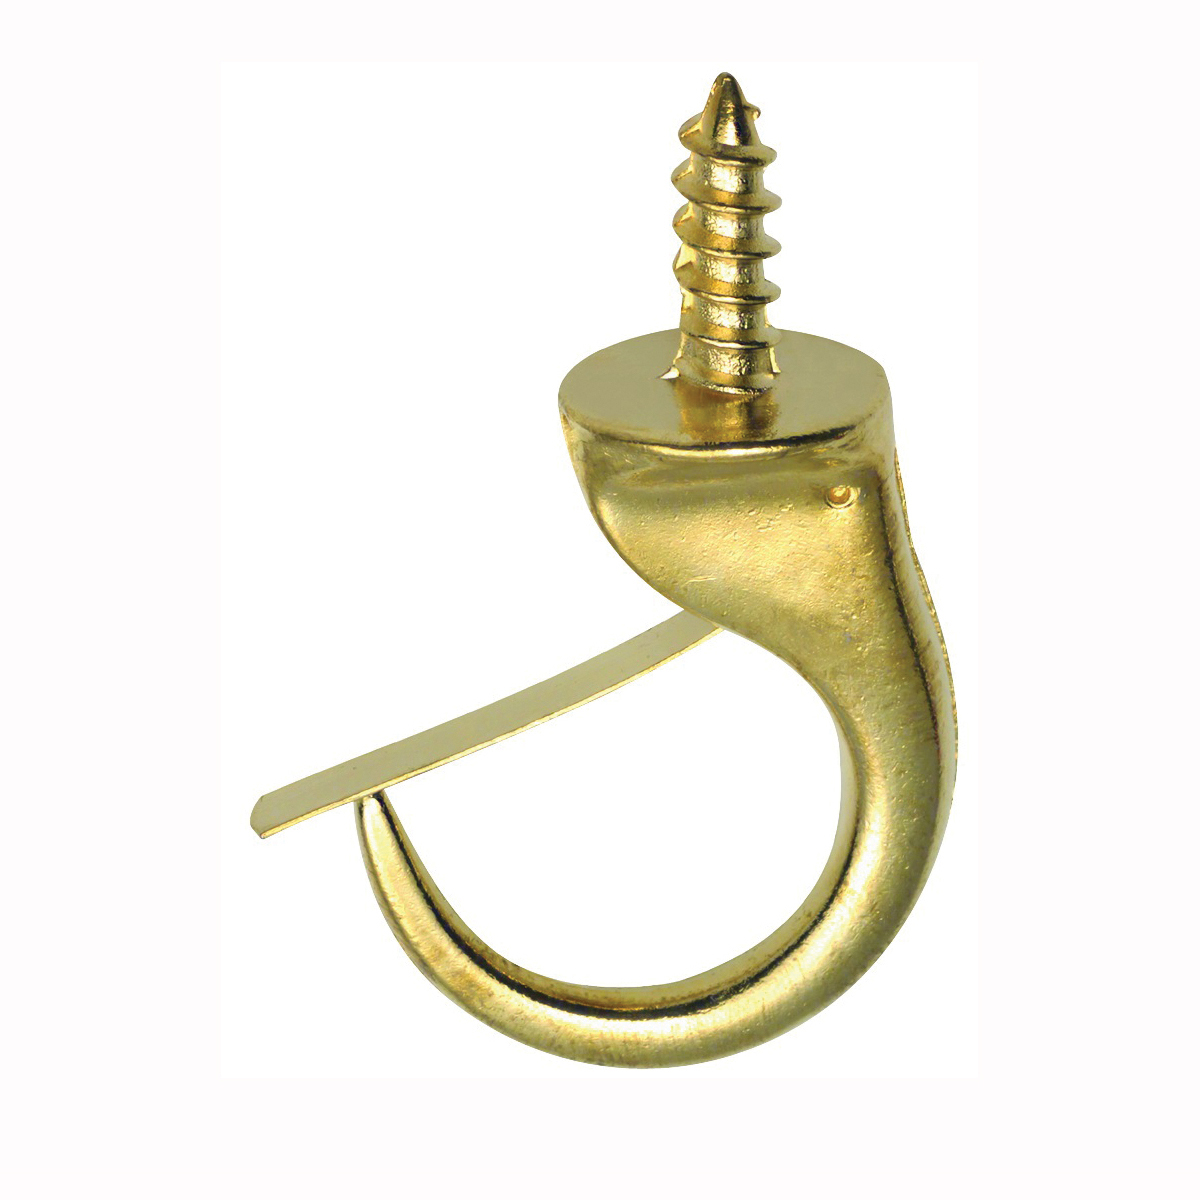 50361 Mug Hook, 1-1/4 in L, Brass